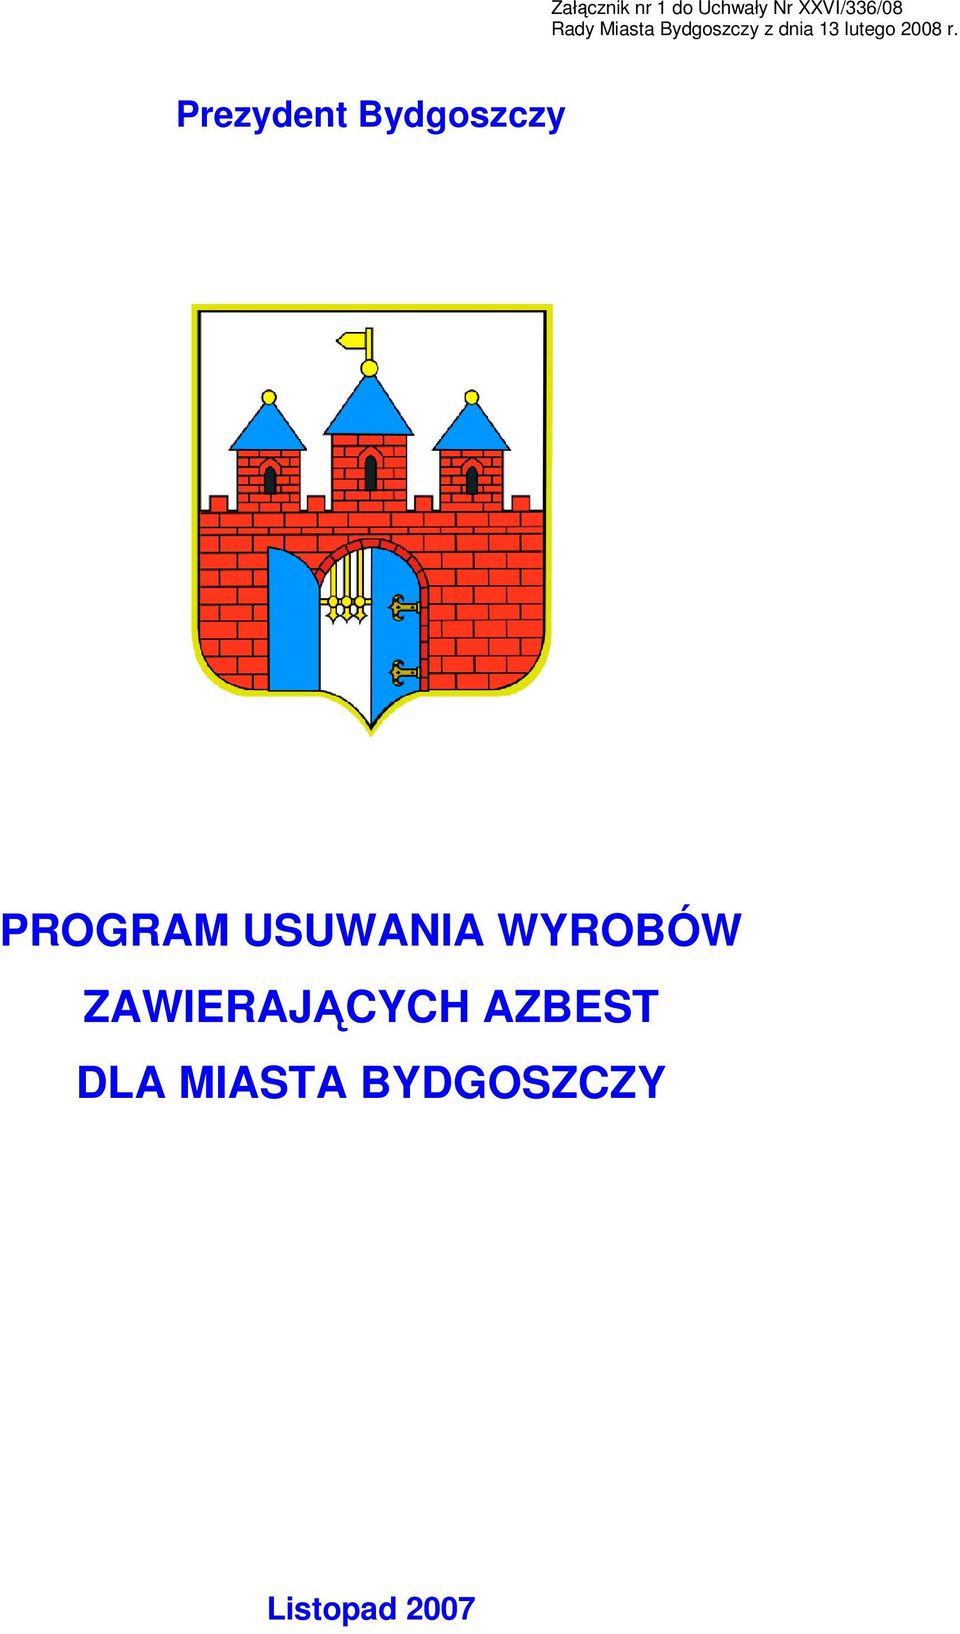 Prezydent Bydgoszczy PROGRAM USUWANIA WYROBÓW